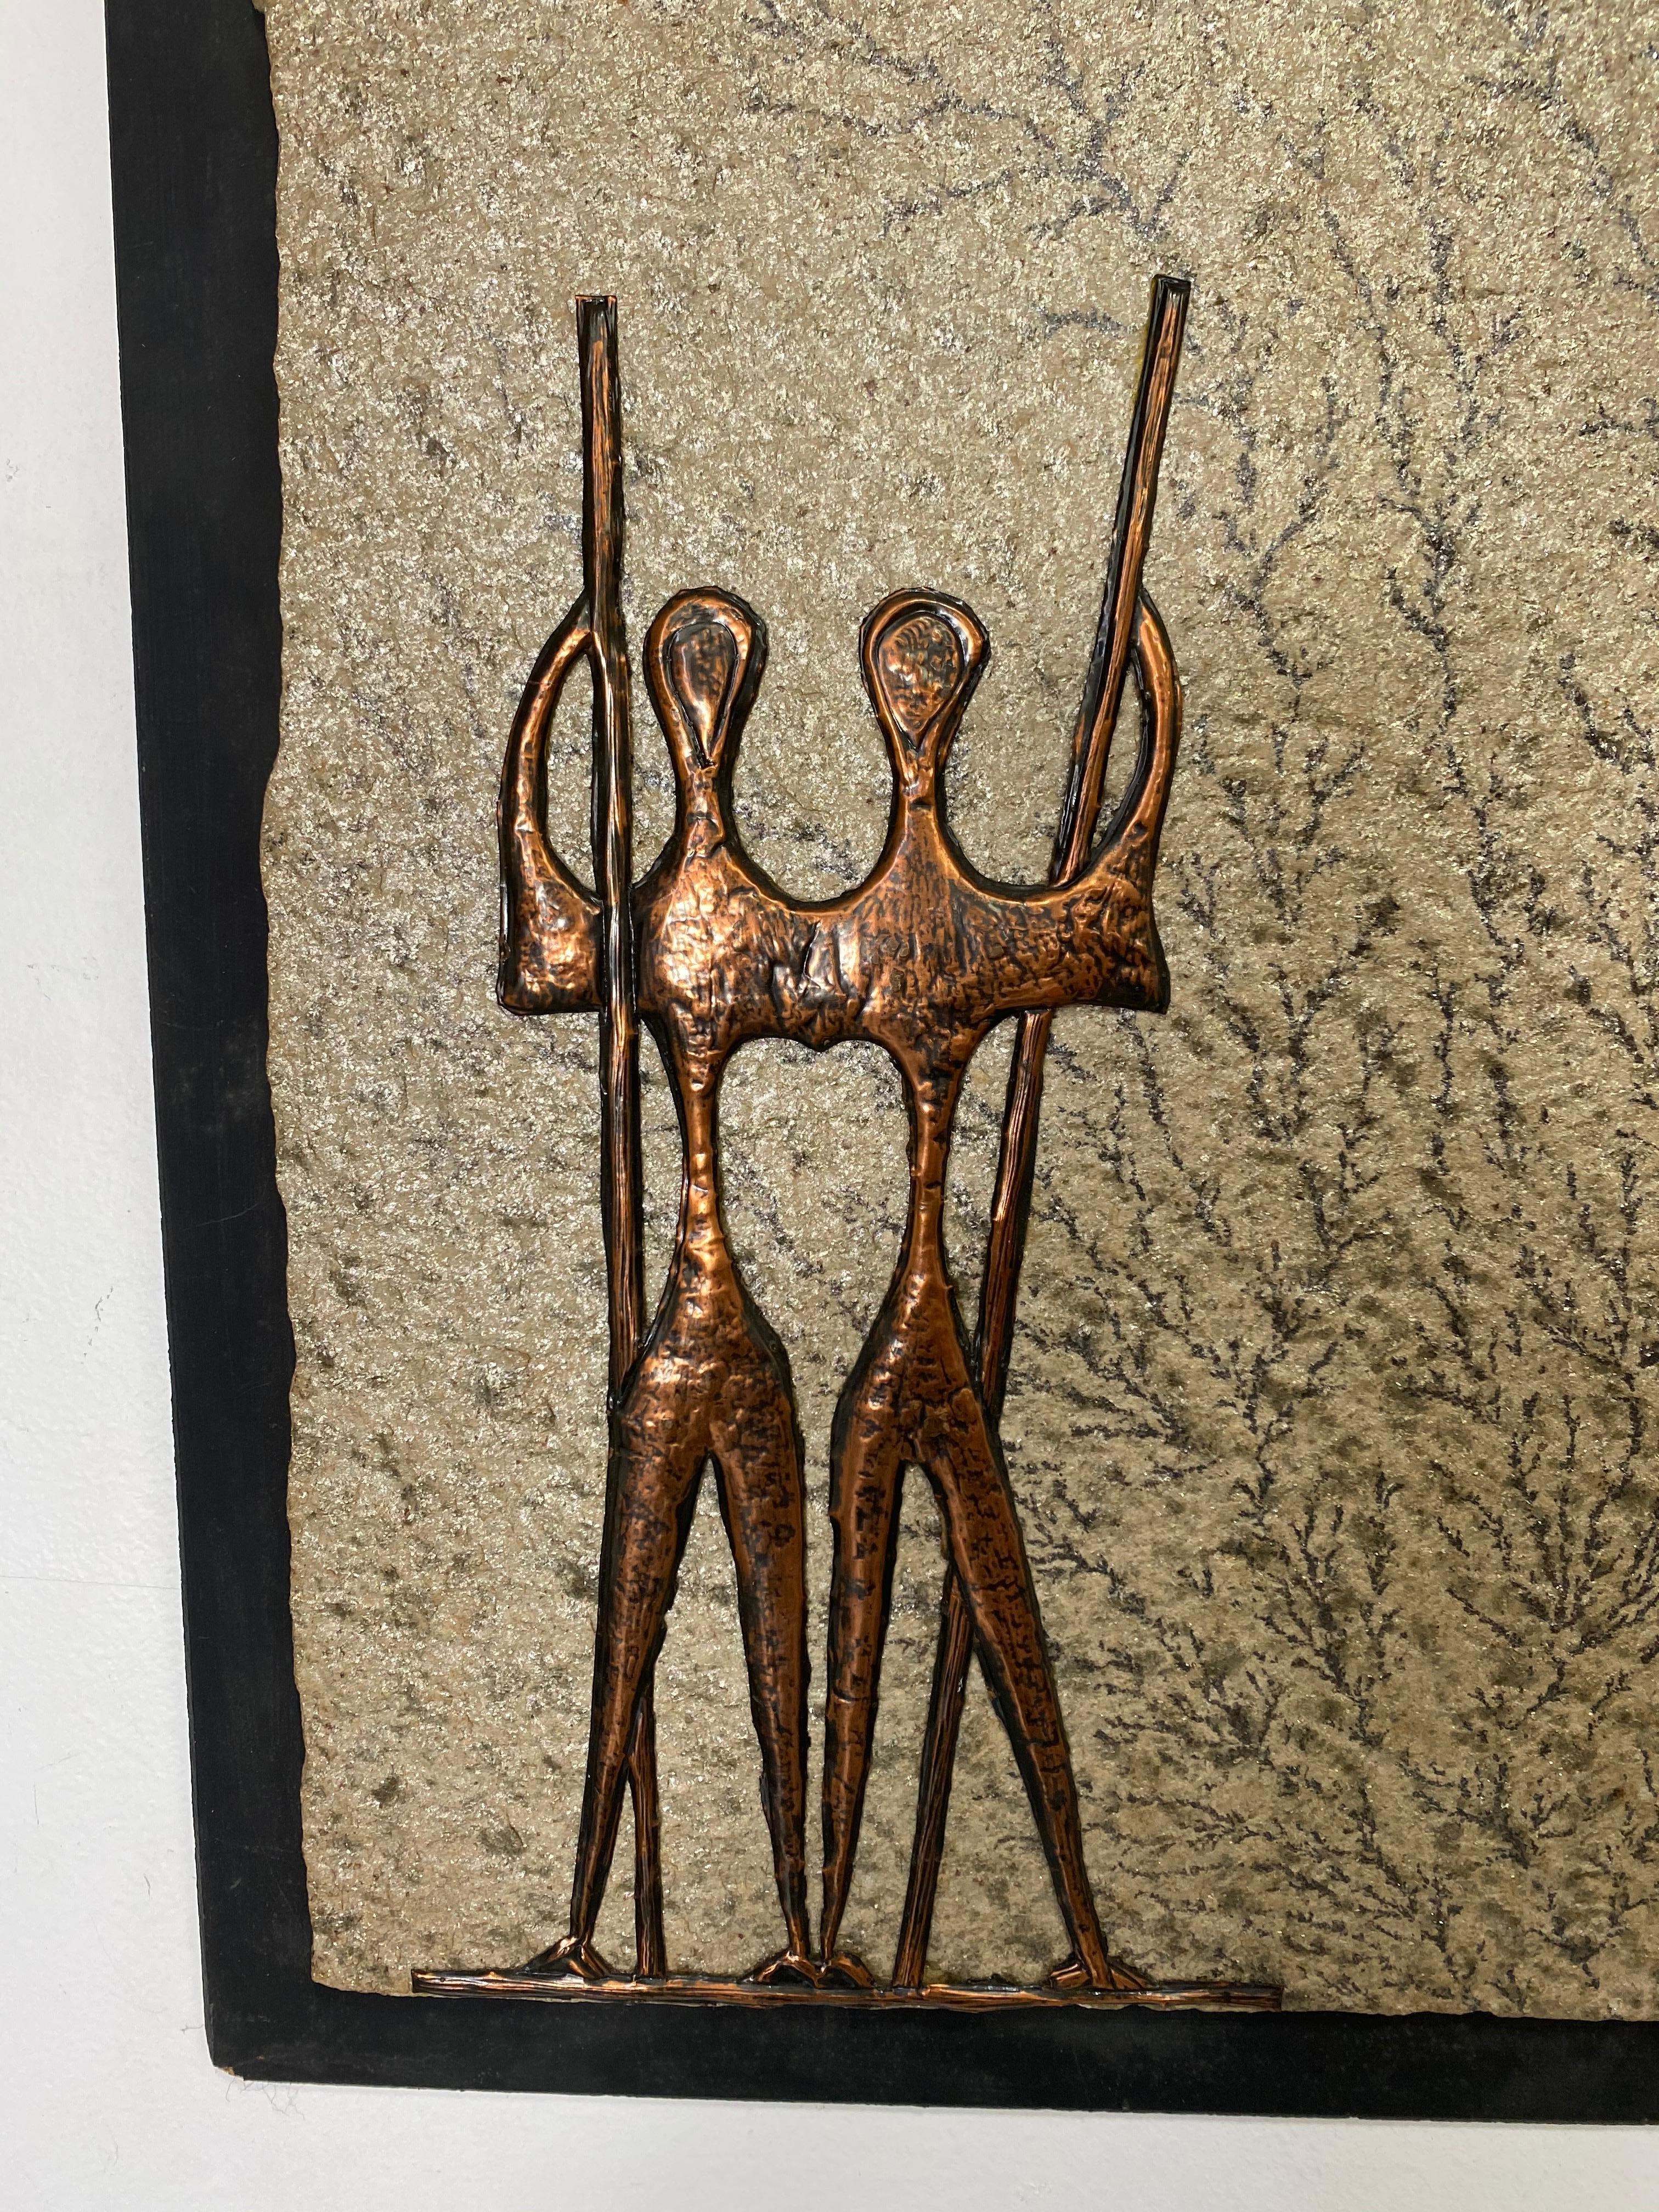 Johannes Wilhelmus Van Dartelen Kupferkunst versteinerter Stein signiert Brasilien gemacht und für die Besatzung der Pan American präsentiert.

Dies ist ein einzigartiges Kunstwerk von Johannes Wilhelmus Van Dartelen
Diese Kupferkunst ist auf